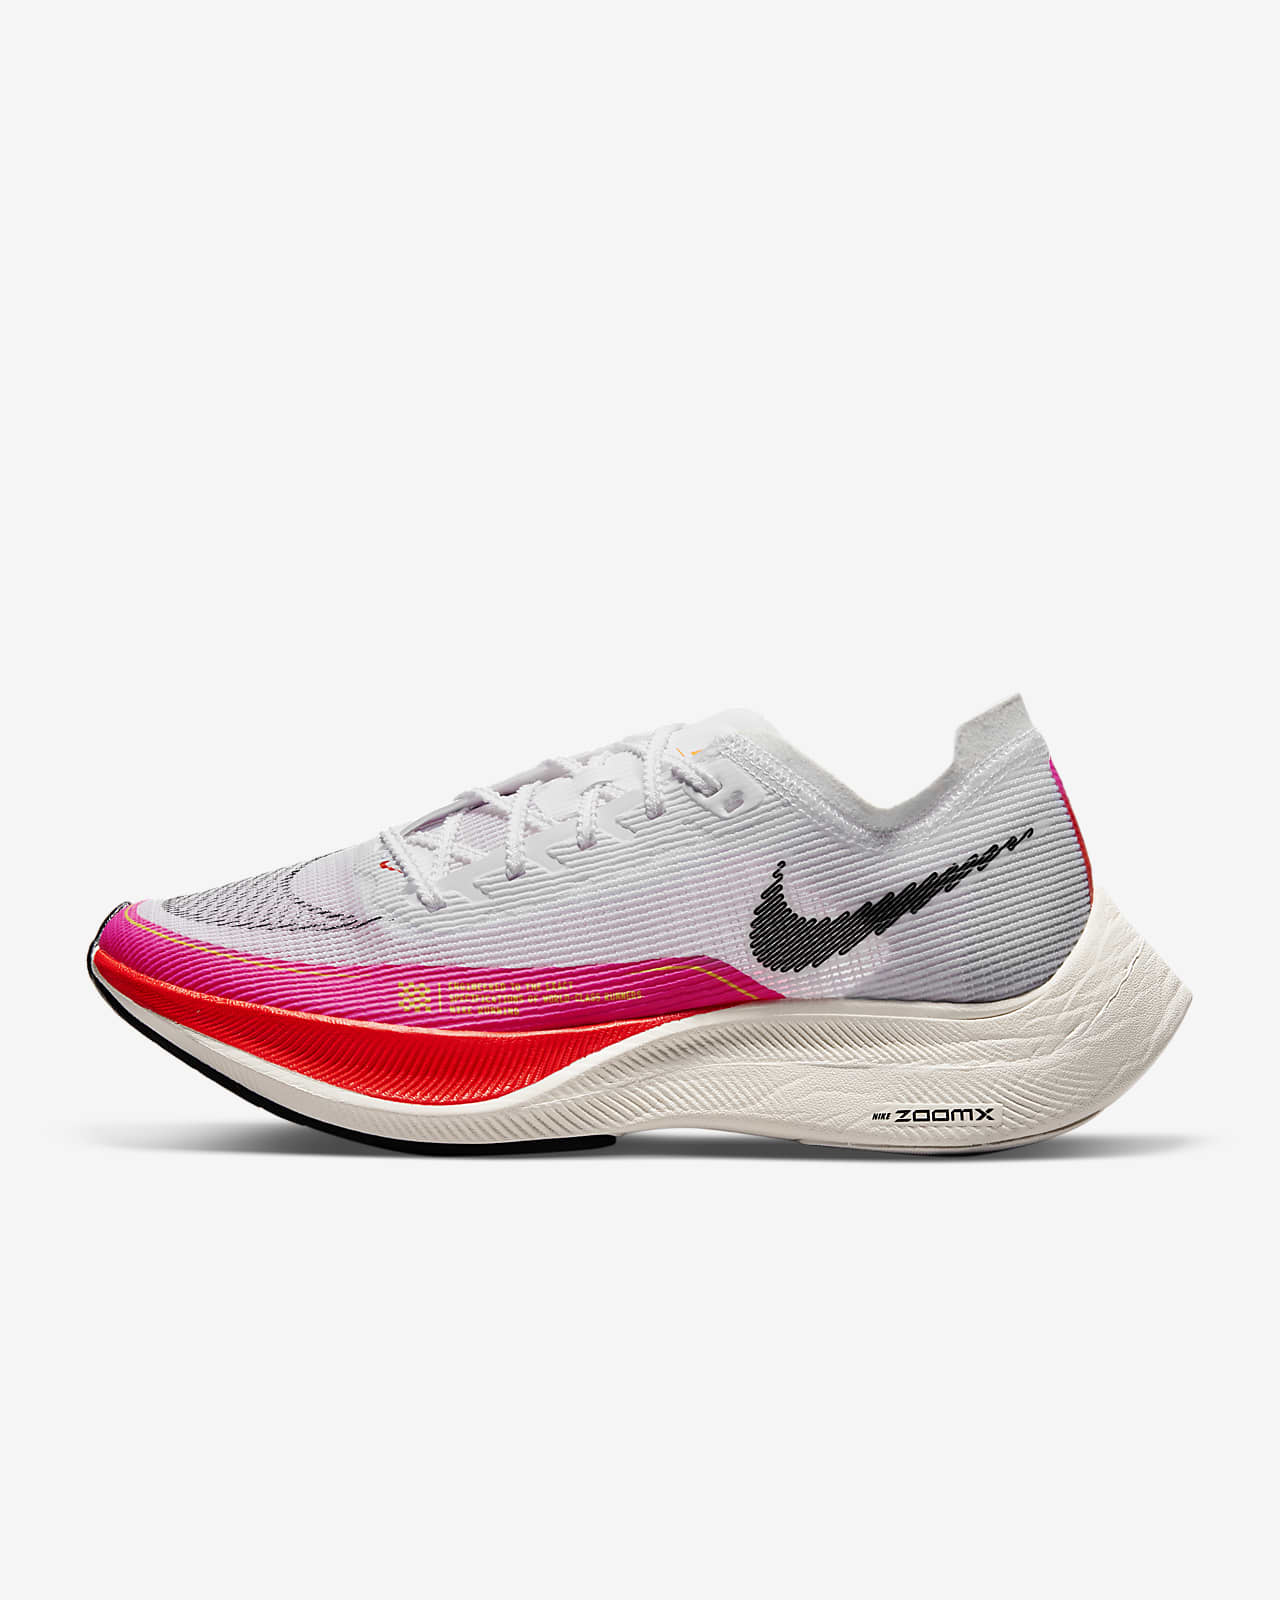 Chaussure de course sur route Nike ZoomX Vaporfly NEXT% 2 pour Femme